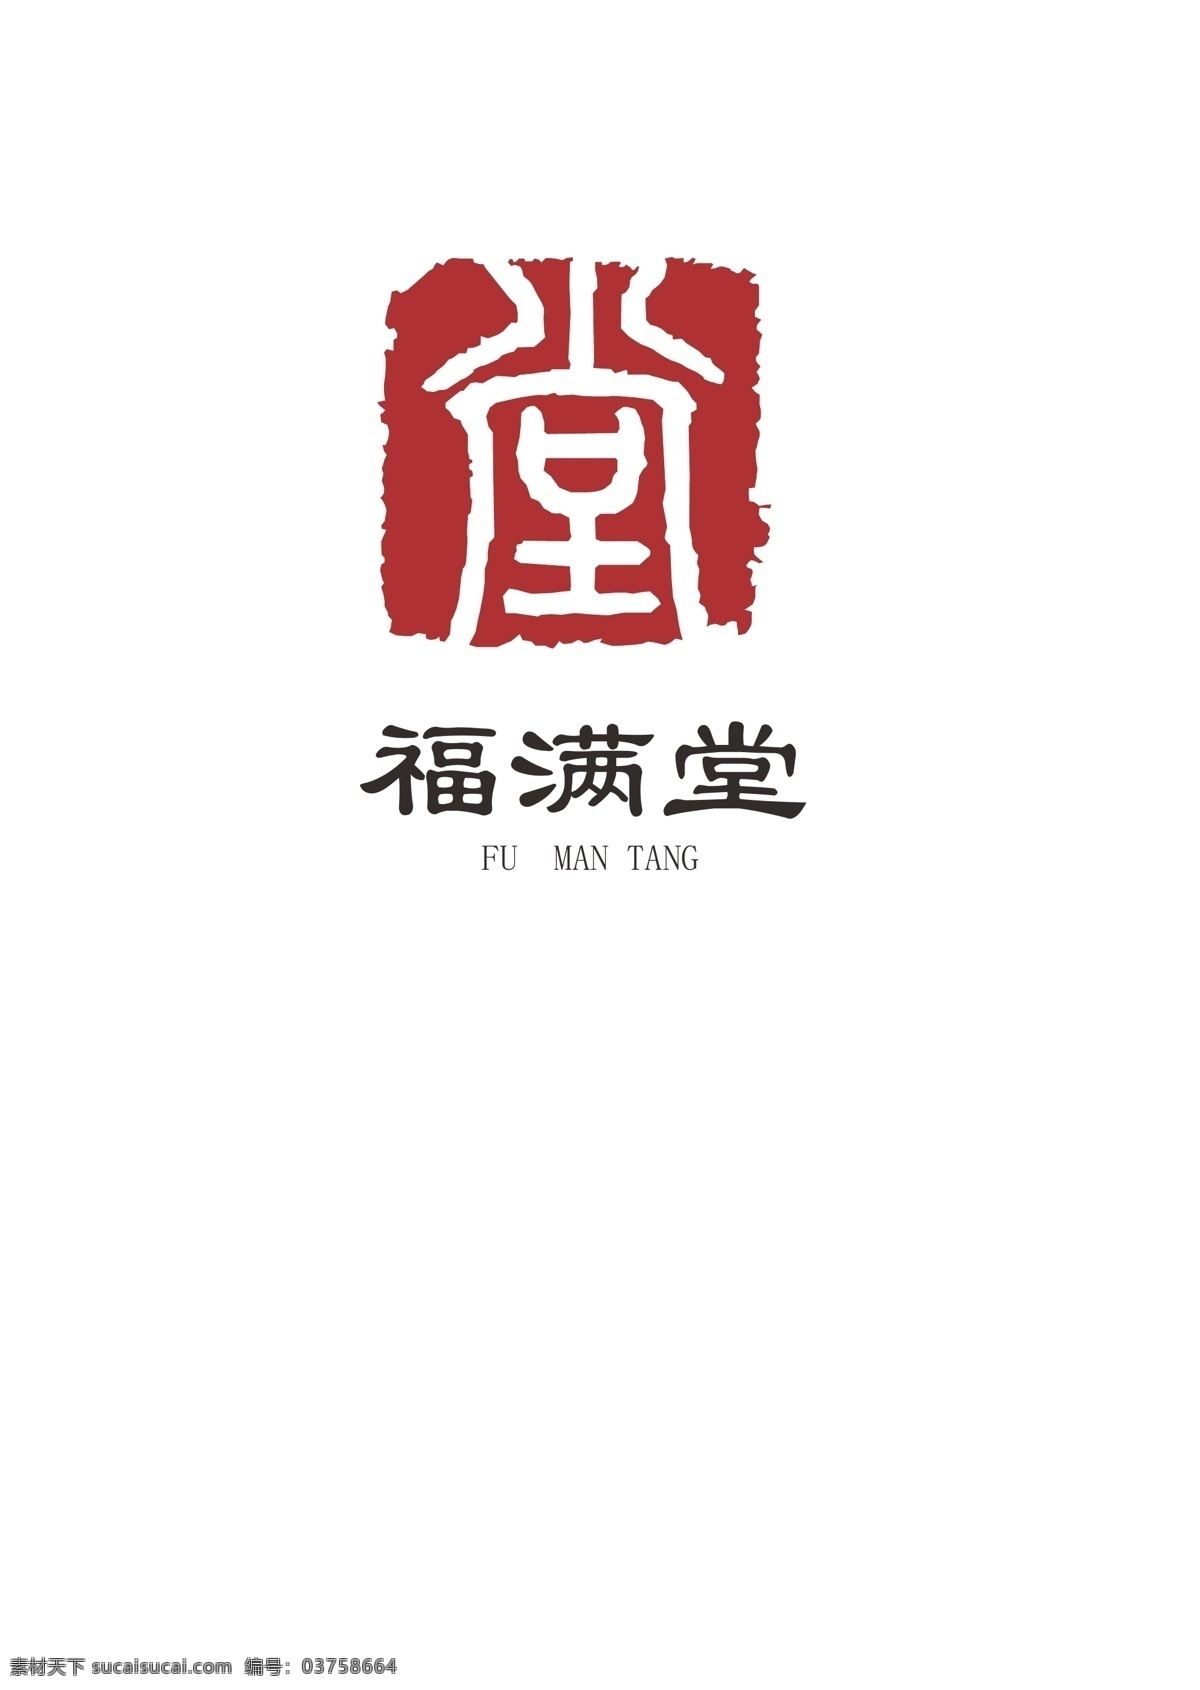 餐饮标志 餐饮 标志 logo 福满堂 印章 logo设计